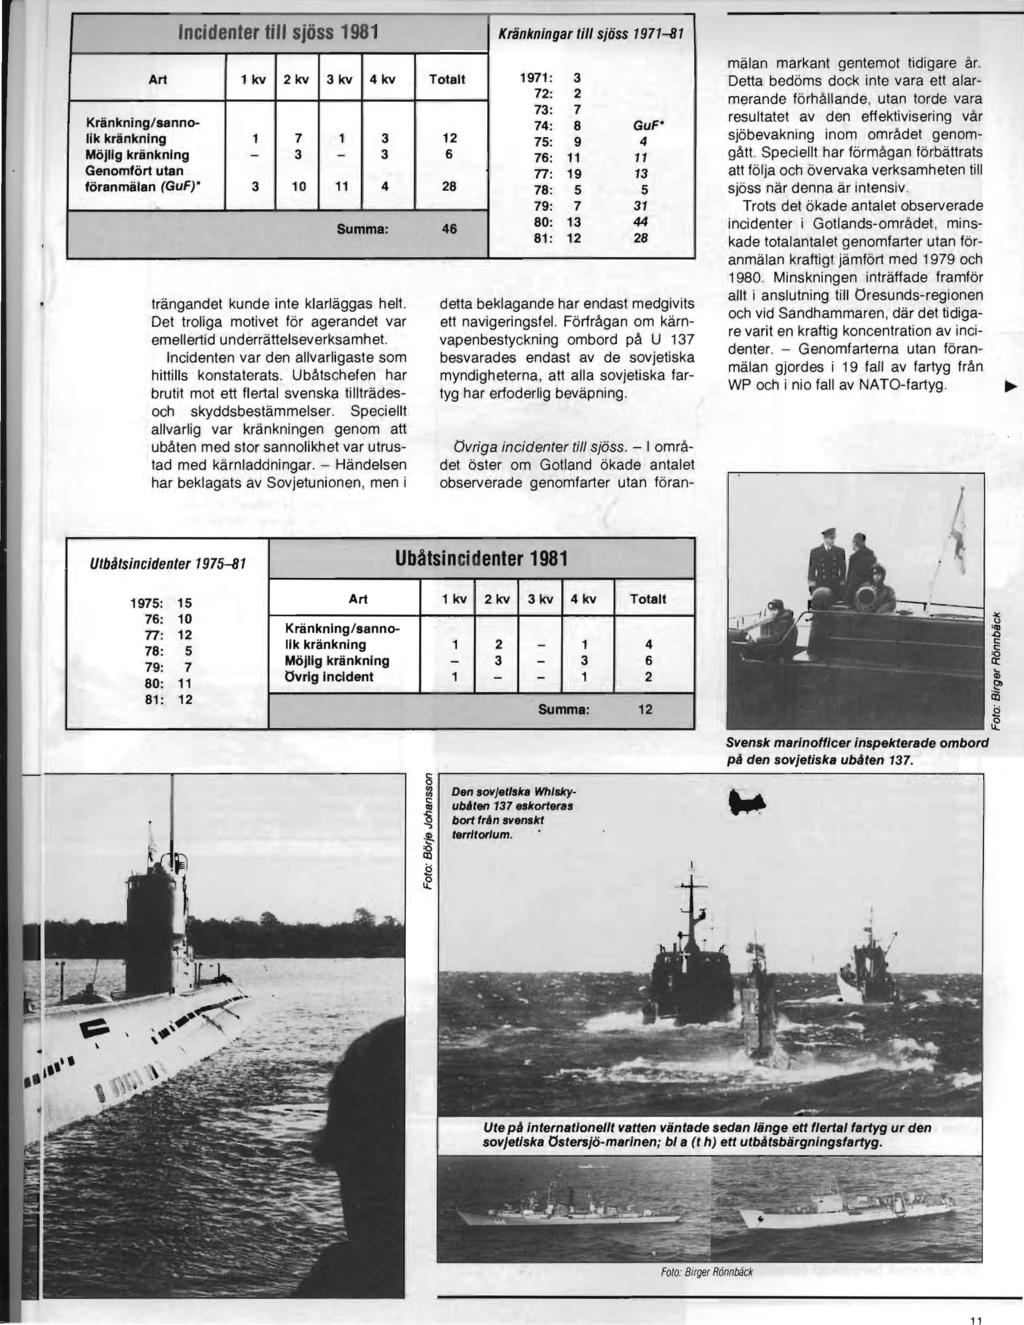 Art Incidenter till sjöss 1981 Kränkningar till sjöss 1971-81 1kv Kränkning/sannolik kränkning Möjlig kränkning Genomfört utan föranmälan (GuF)* 3 2kv 7 3 10 I 3kv 14 kv, Totalt 1971 : 3 72: 2 73: 7